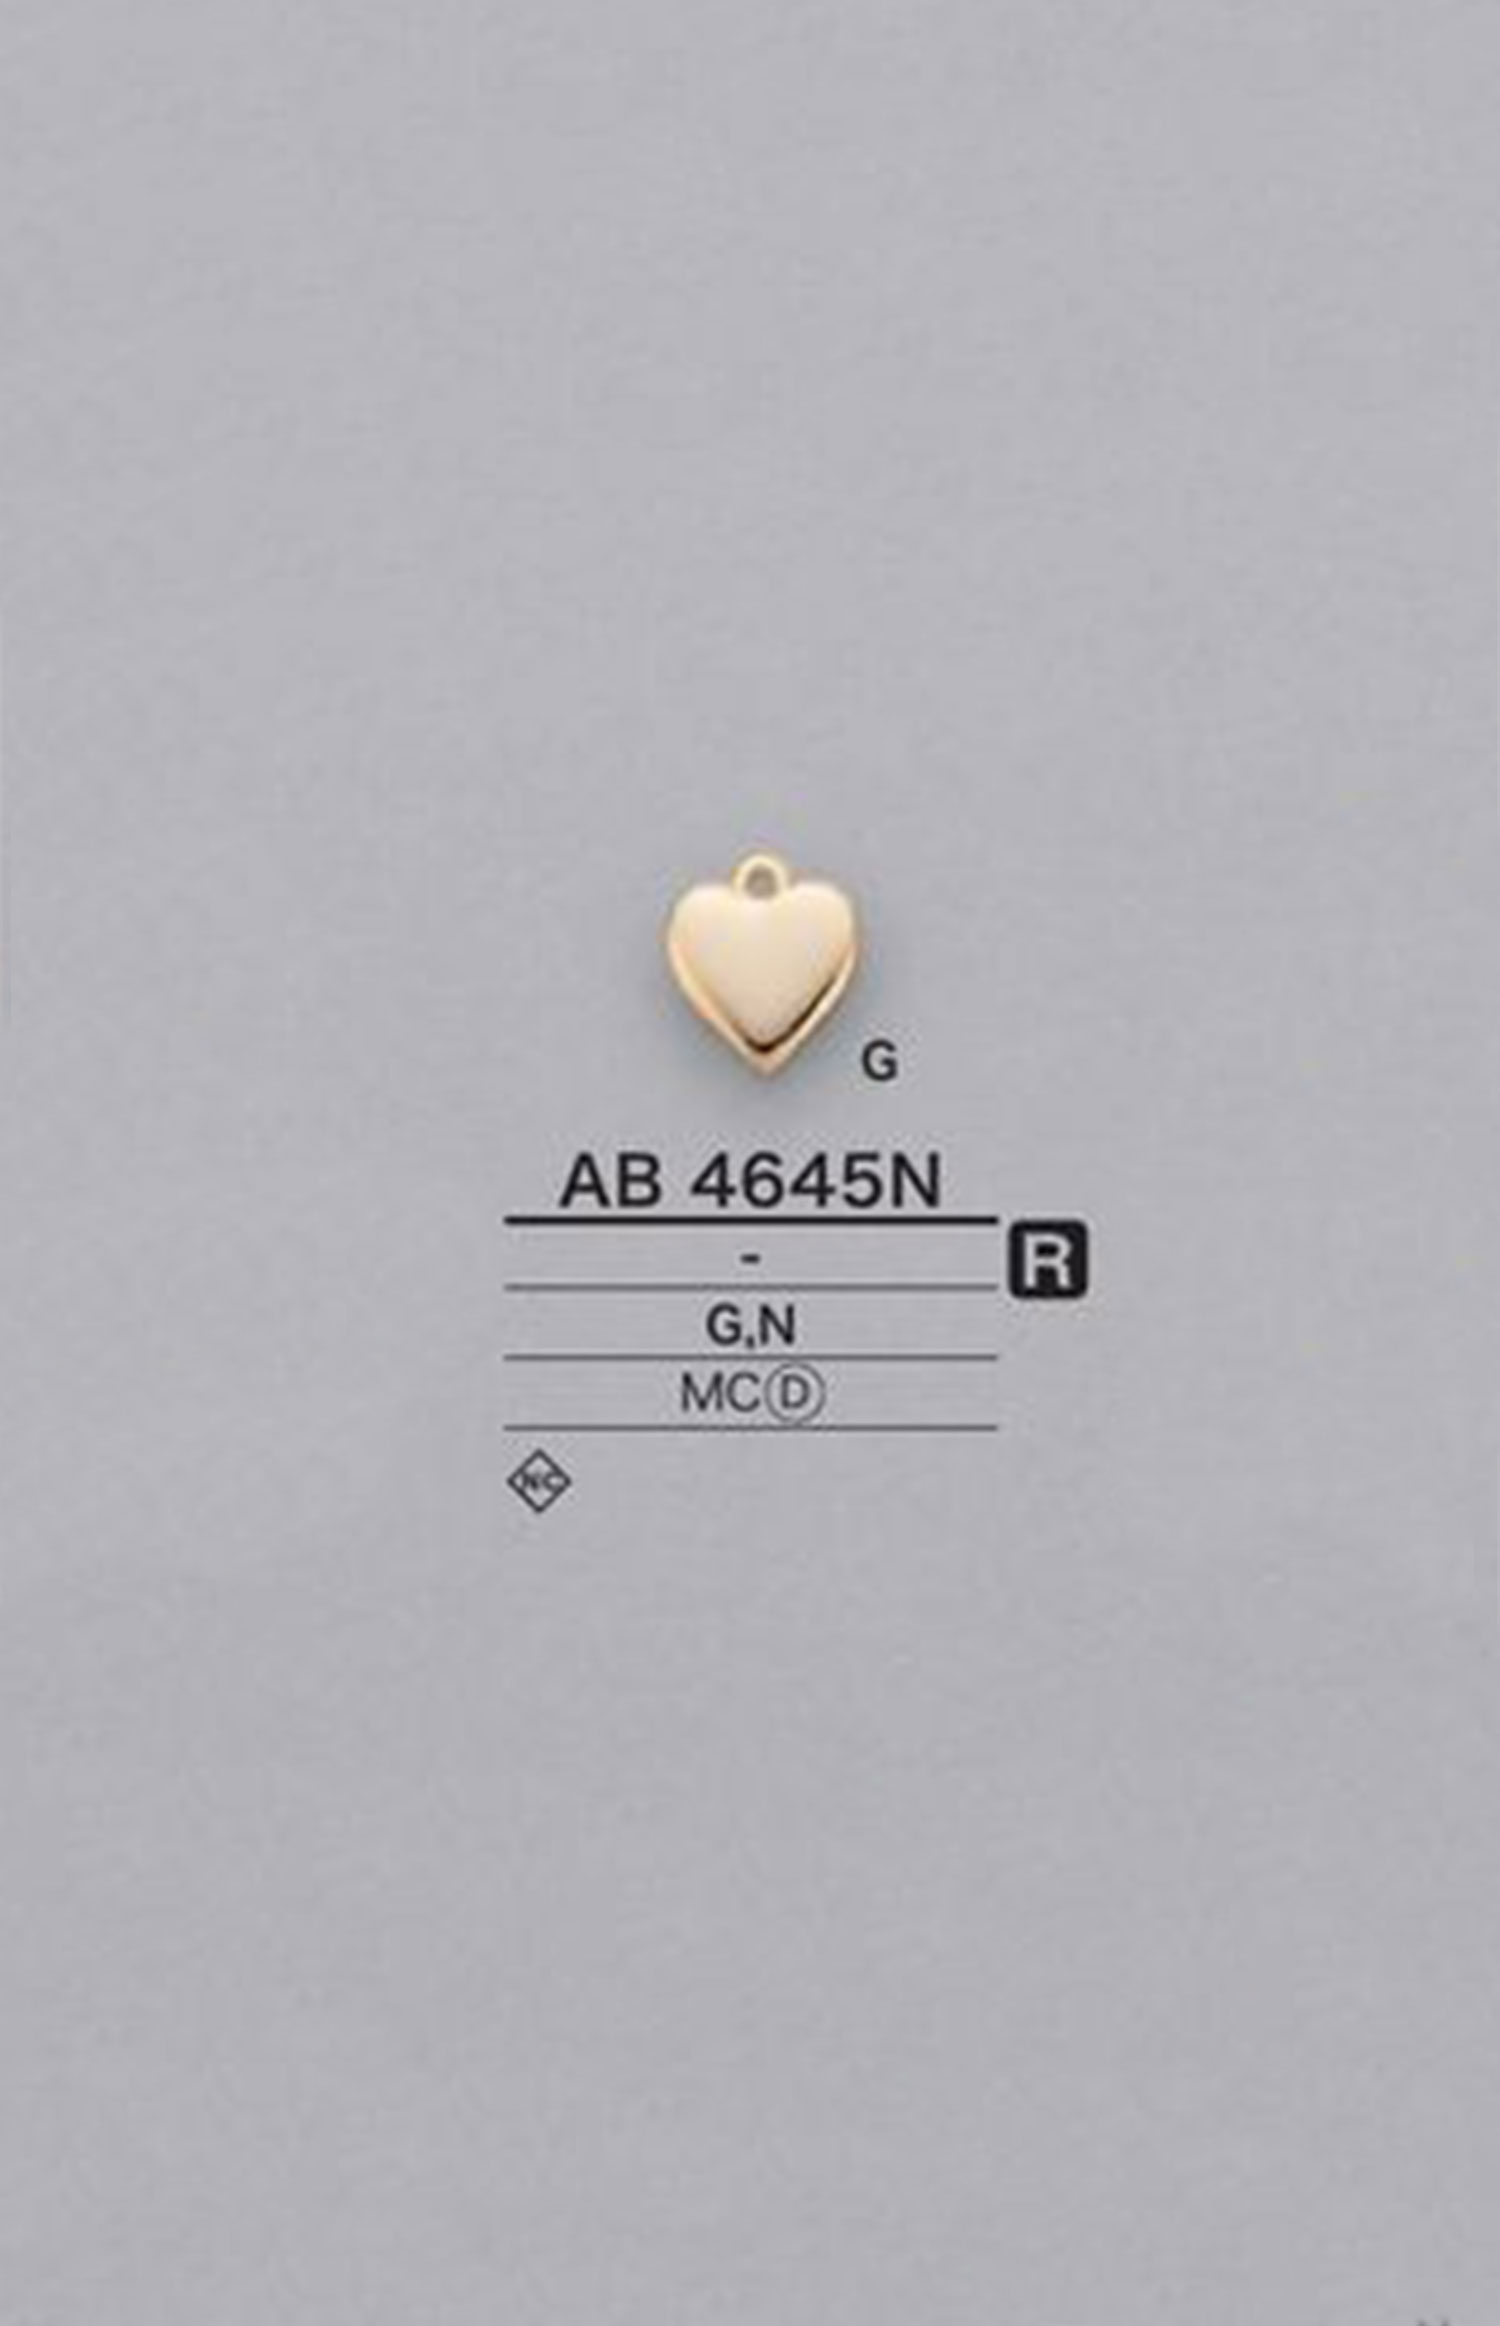 AB4645N Piezas Con Motivos En Forma De Corazón[Mercancías Misceláneas Y Otros] IRIS